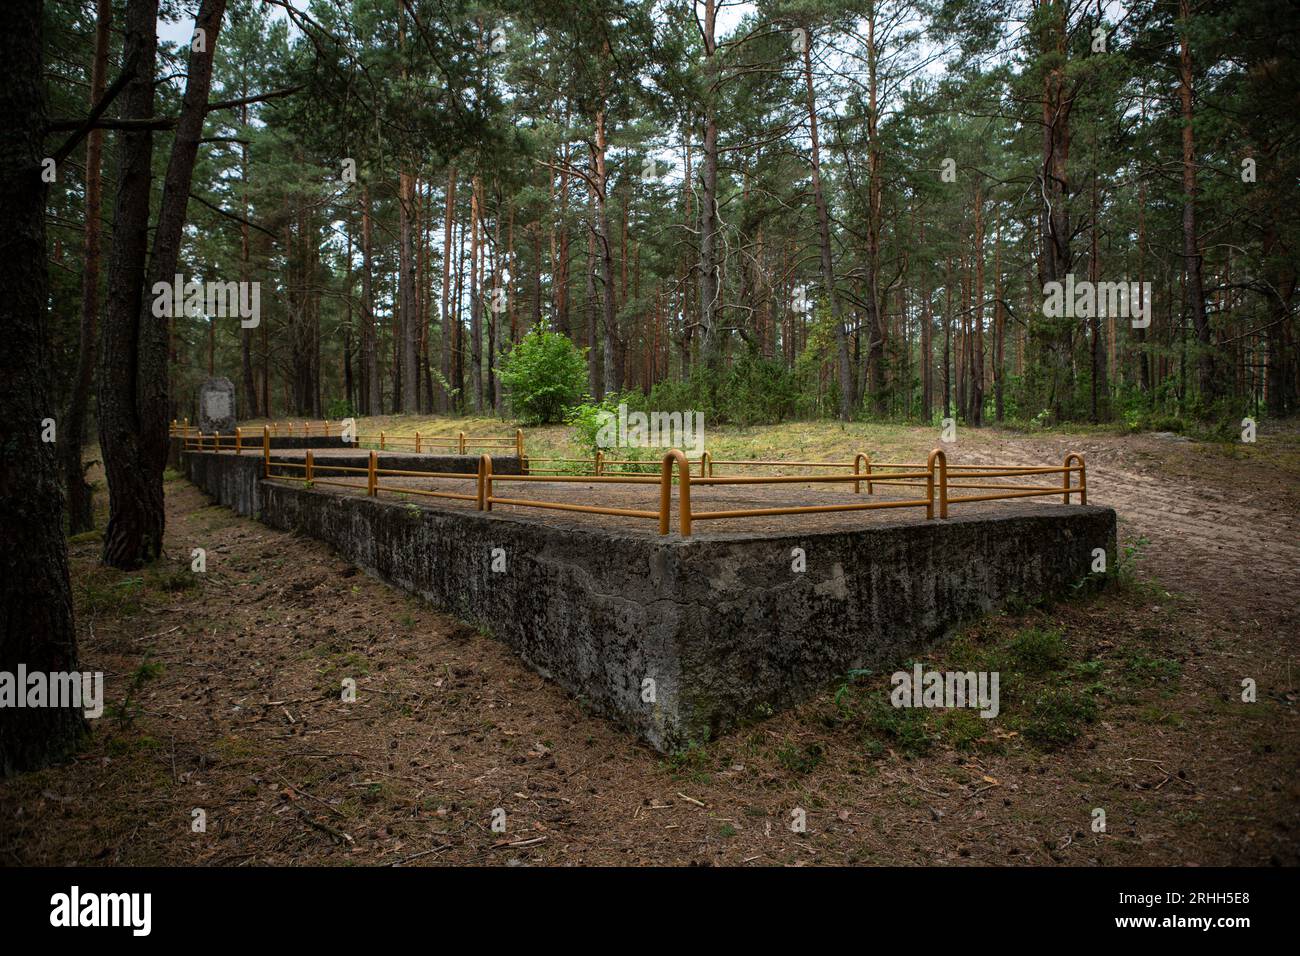 A Merkinė, einer kleinen Stadt in Litauen, gibt es einen alten jüdischen Friedhof, der tief im Wald versteckt liegt. Dieser Friedhof Dient als stille Foto Stock